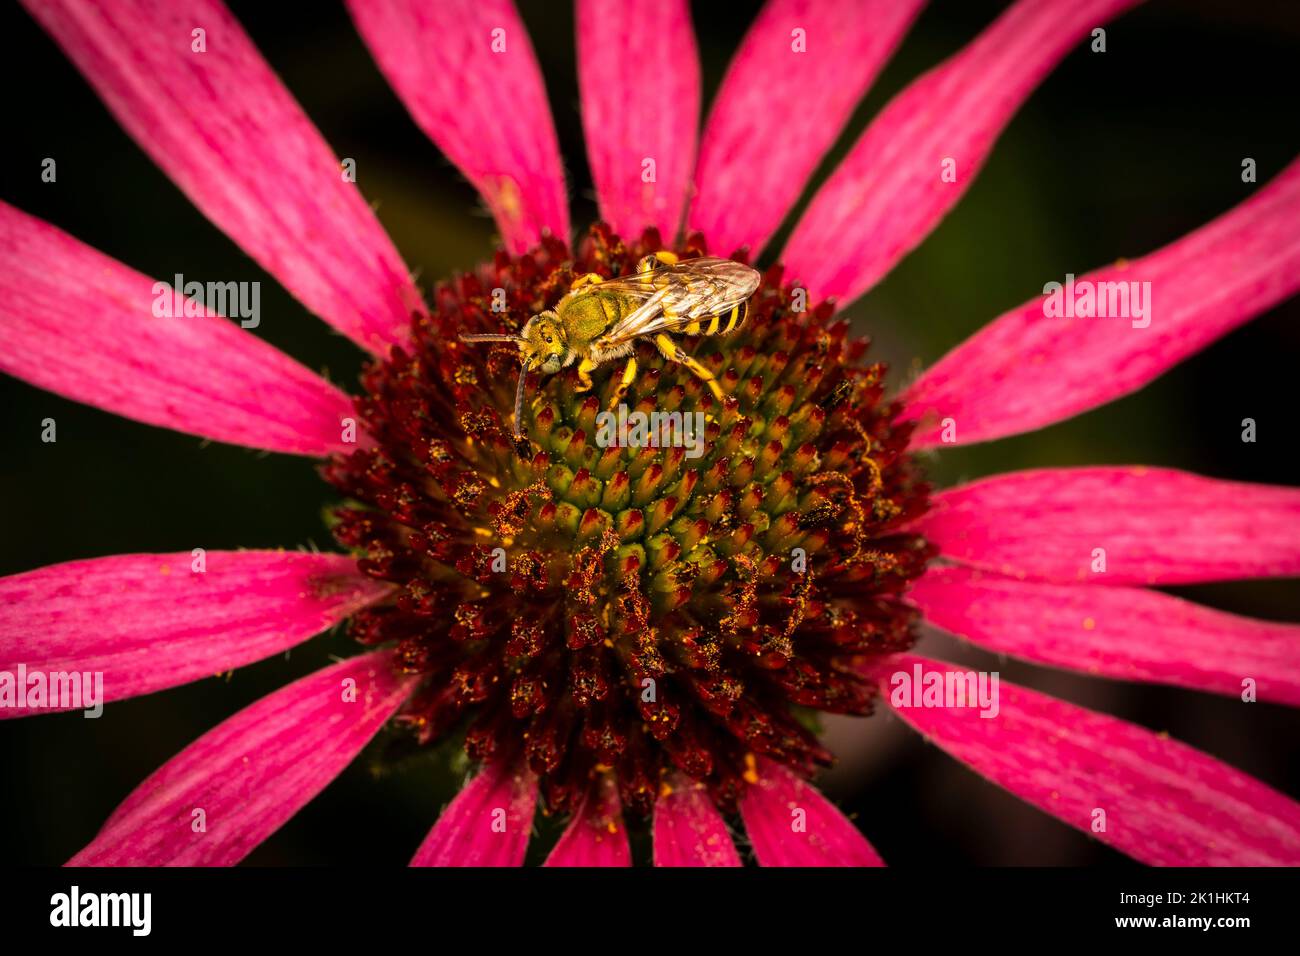 Nahaufnahme einer Bicolored Striped-Sweat-Biene auf einer prächtigen Echinacea-Blume. Stockfoto